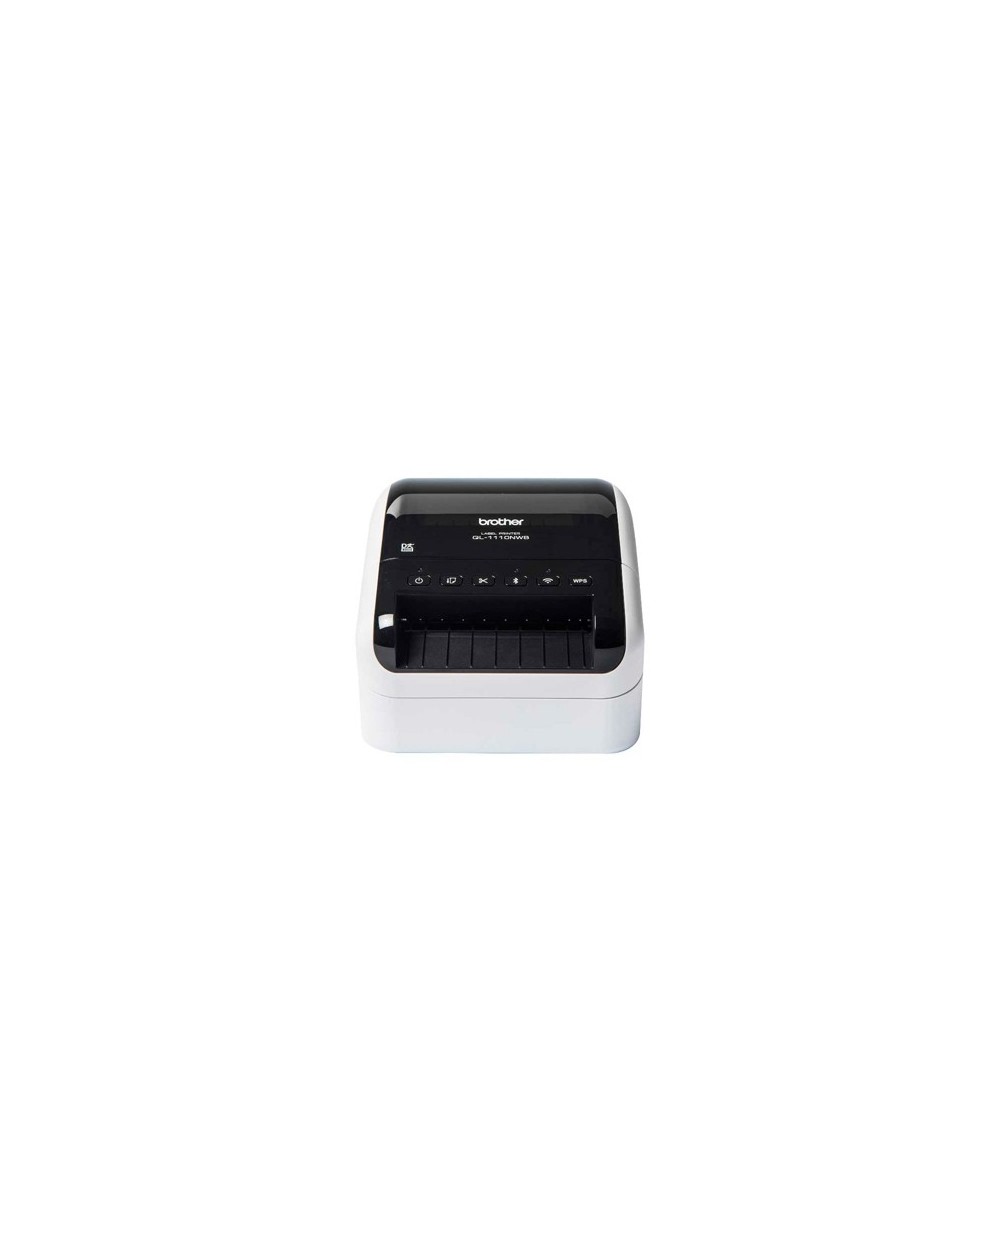 Impresora de etiquetas brother ql 1110nwb hasta 103 mm corte automatico impresion b n usb 20 wifi bluetooth